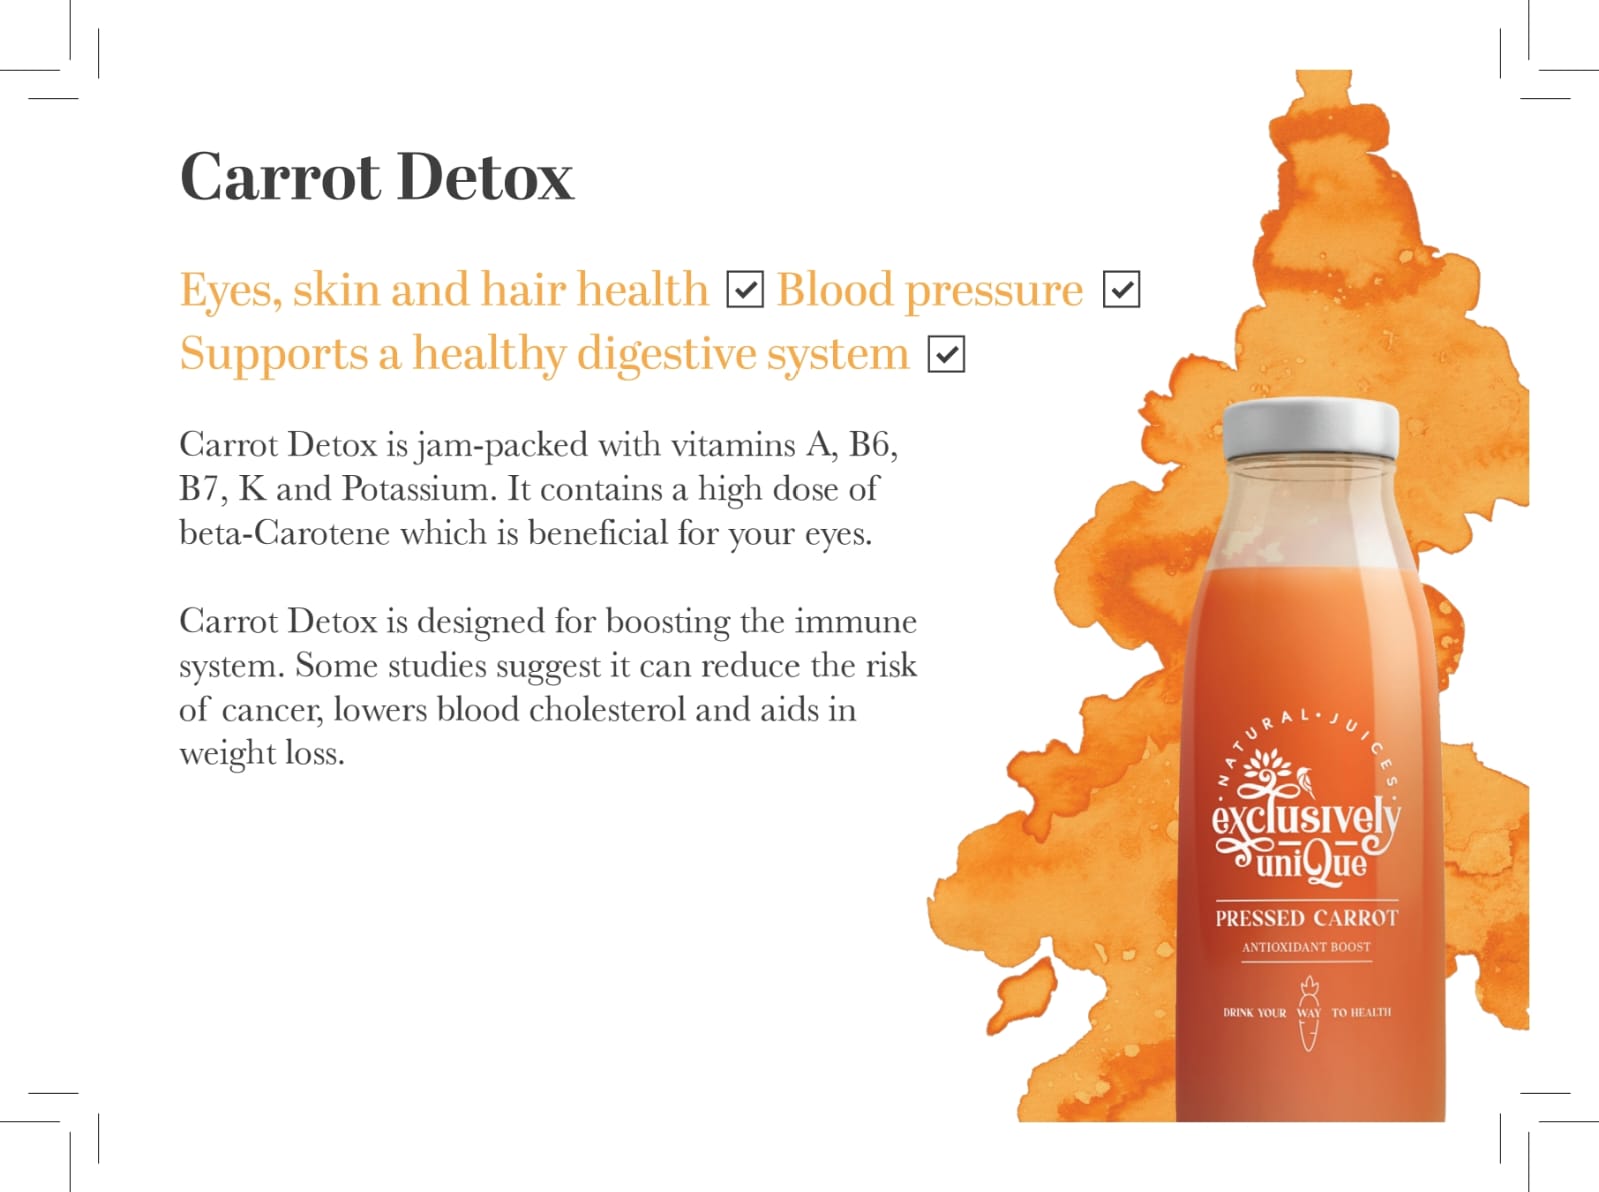 Carrot Detox